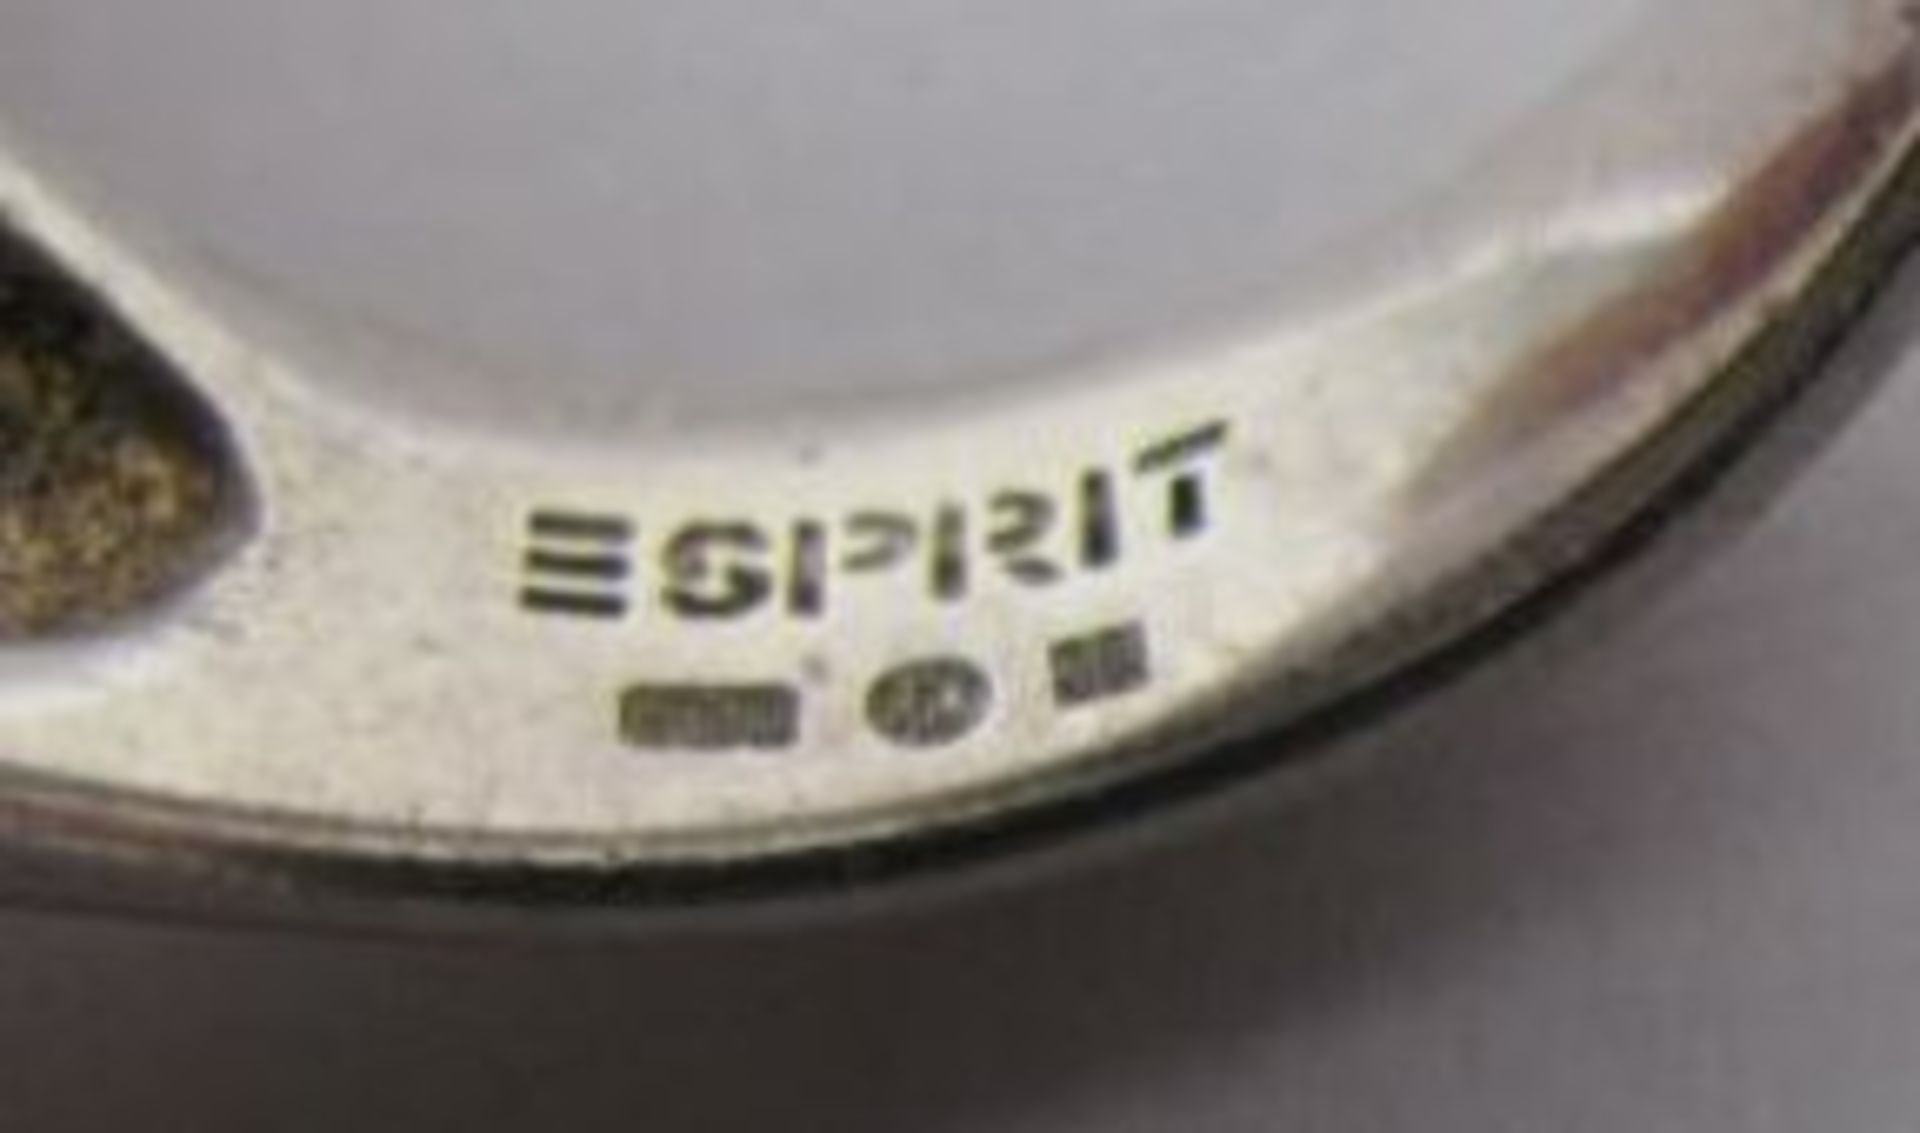 925er Silberring "ESPRIT", grüner Stein ?, 20,8g, RG 60. - Bild 2 aus 2